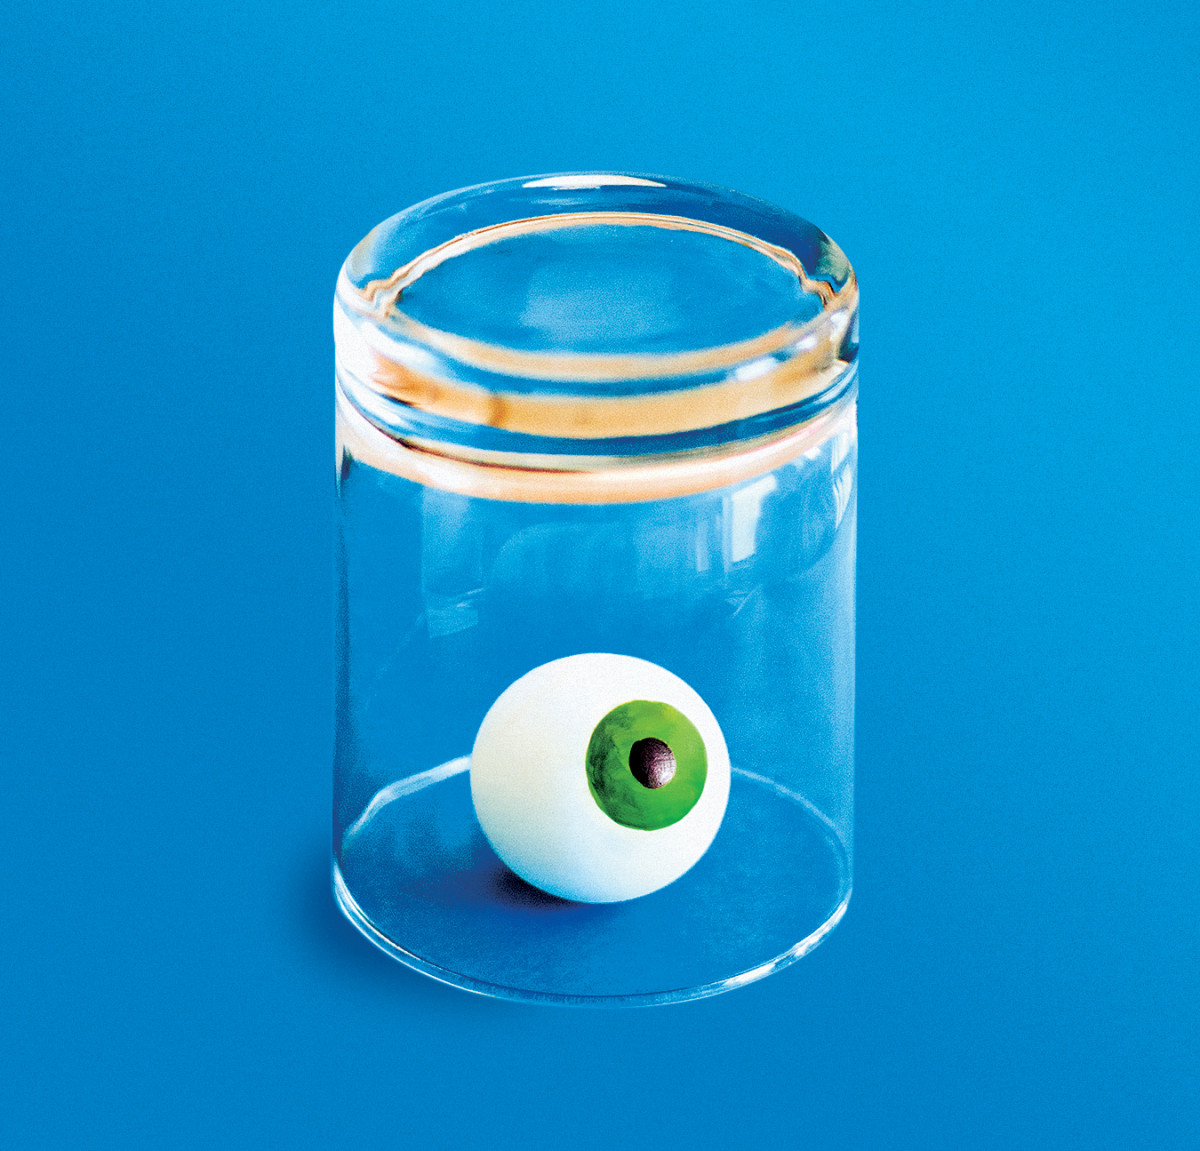 An illustration of an eyeball inside an upturned glass.